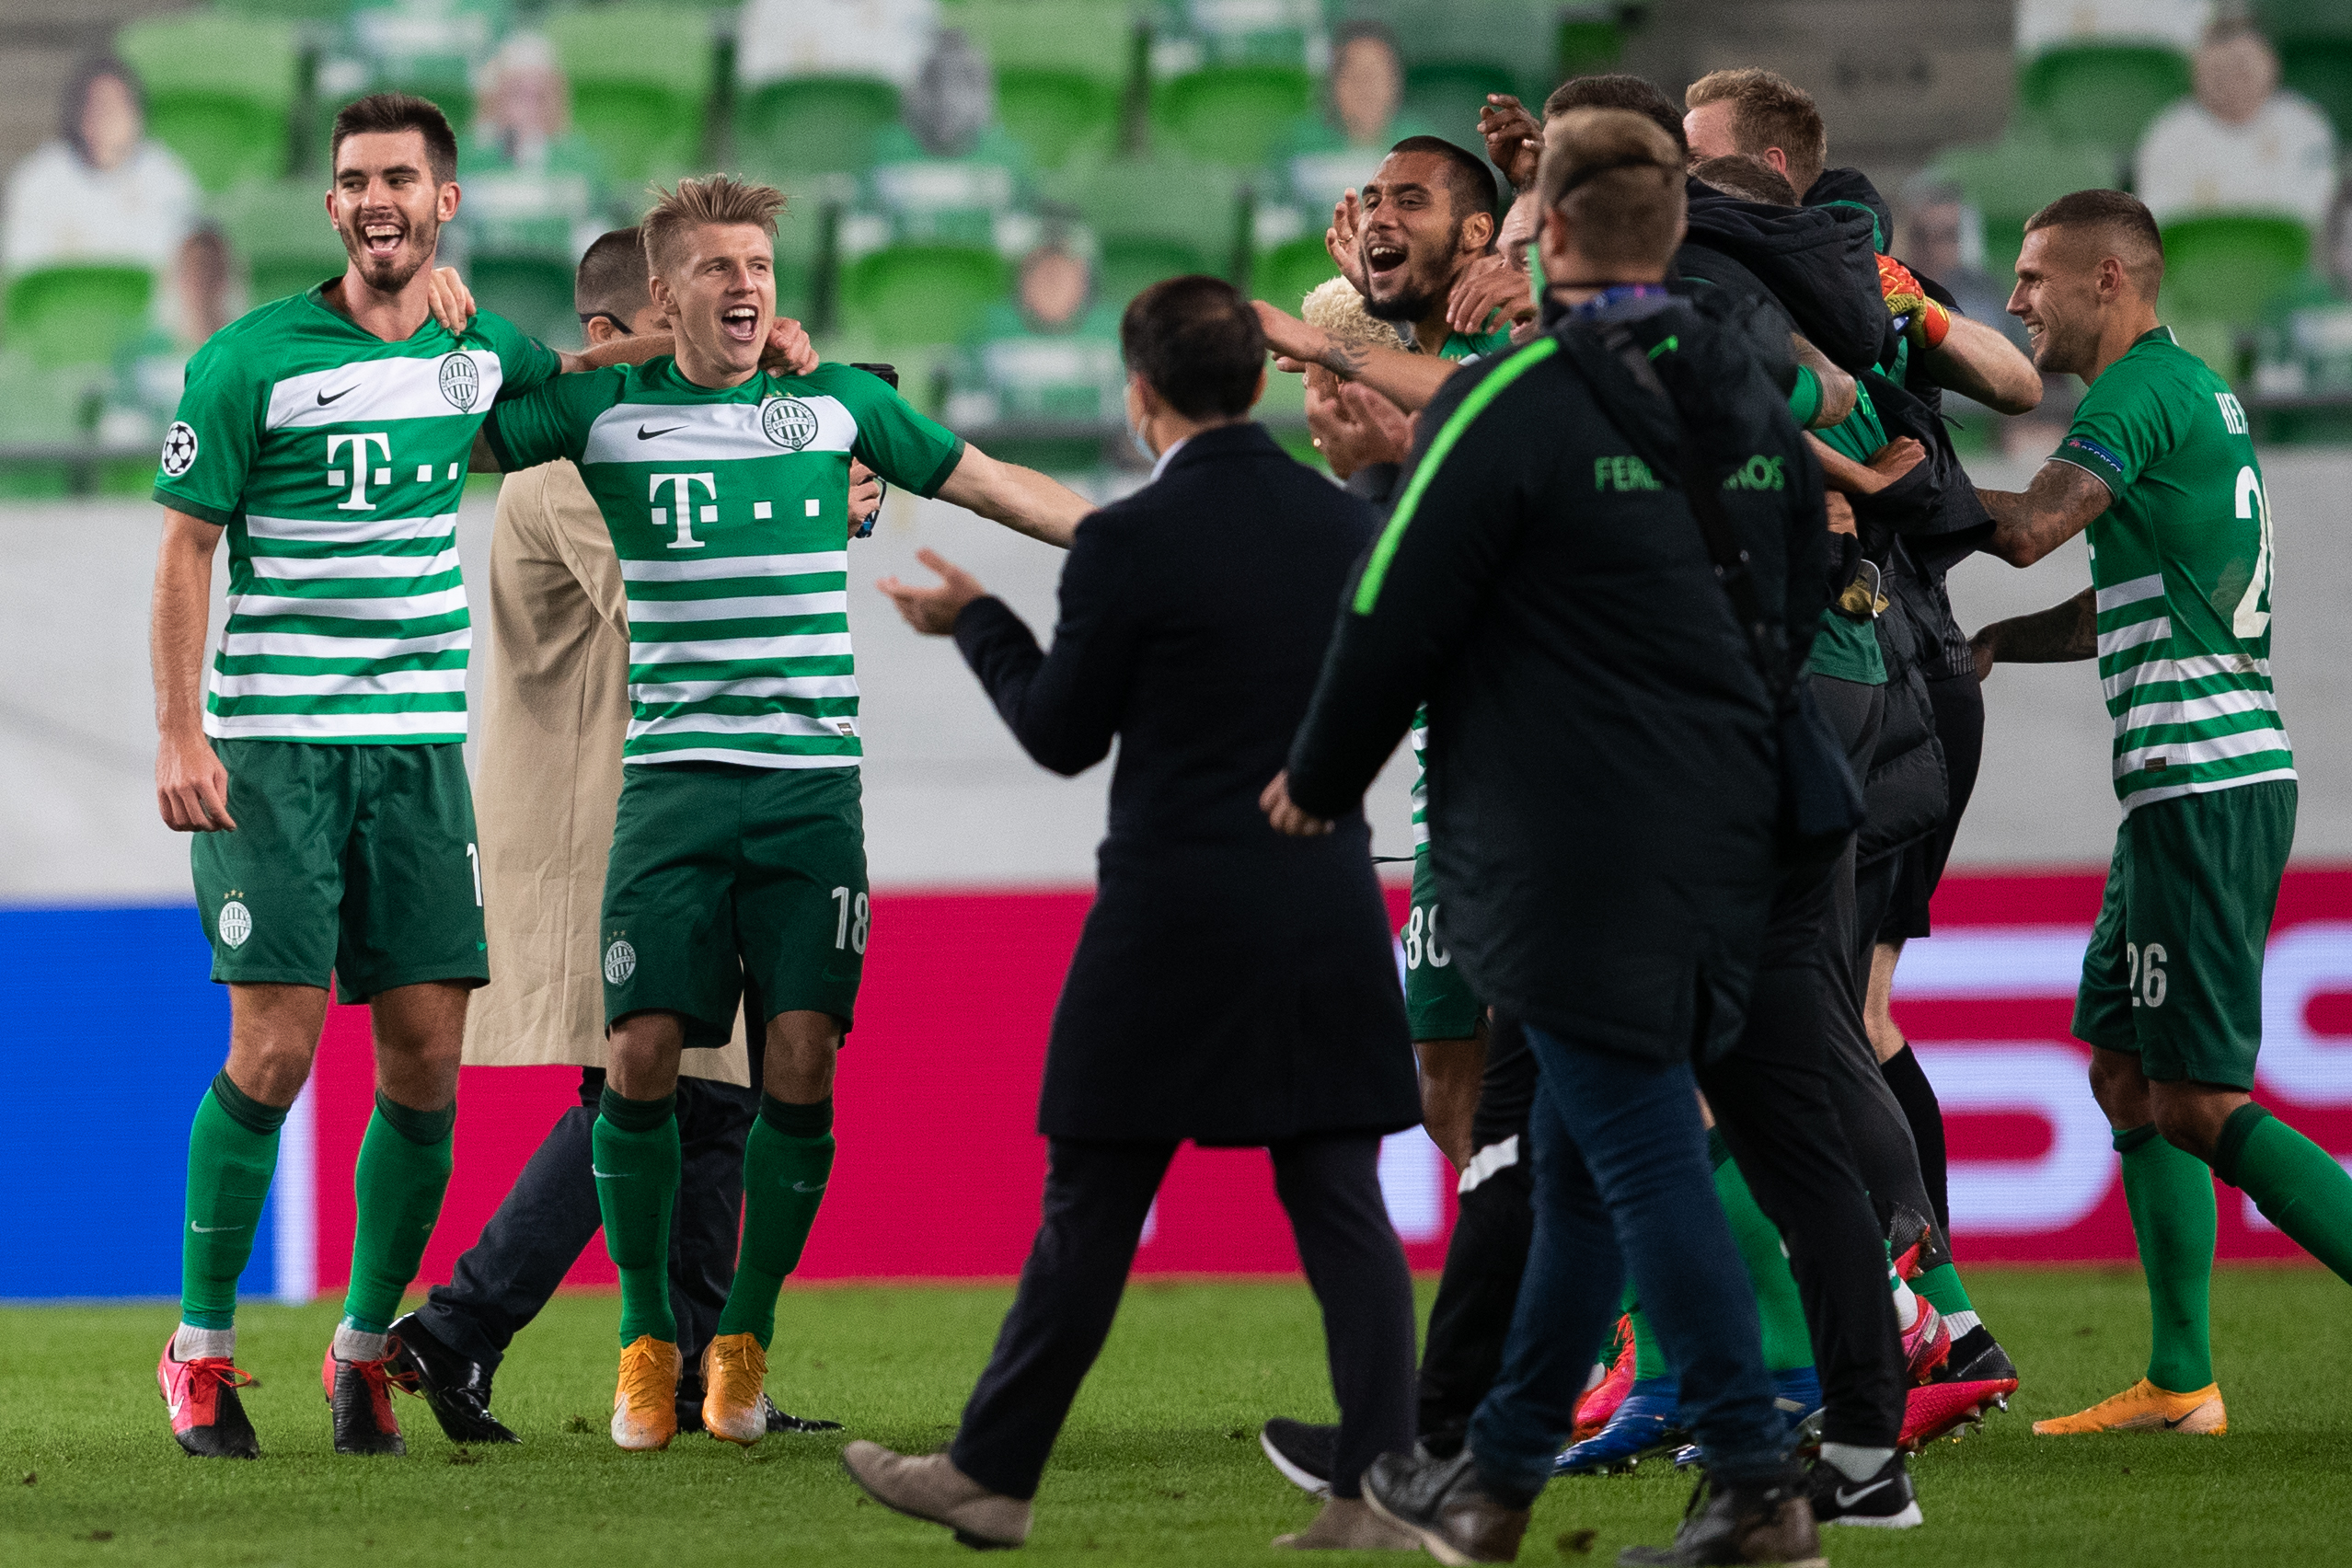 A Ferencváros 25 év után jutott ismét a Bajnokok Ligája csoportkörébe, így érthető a focisták öröme. / Fotó: Zsolnai Péter